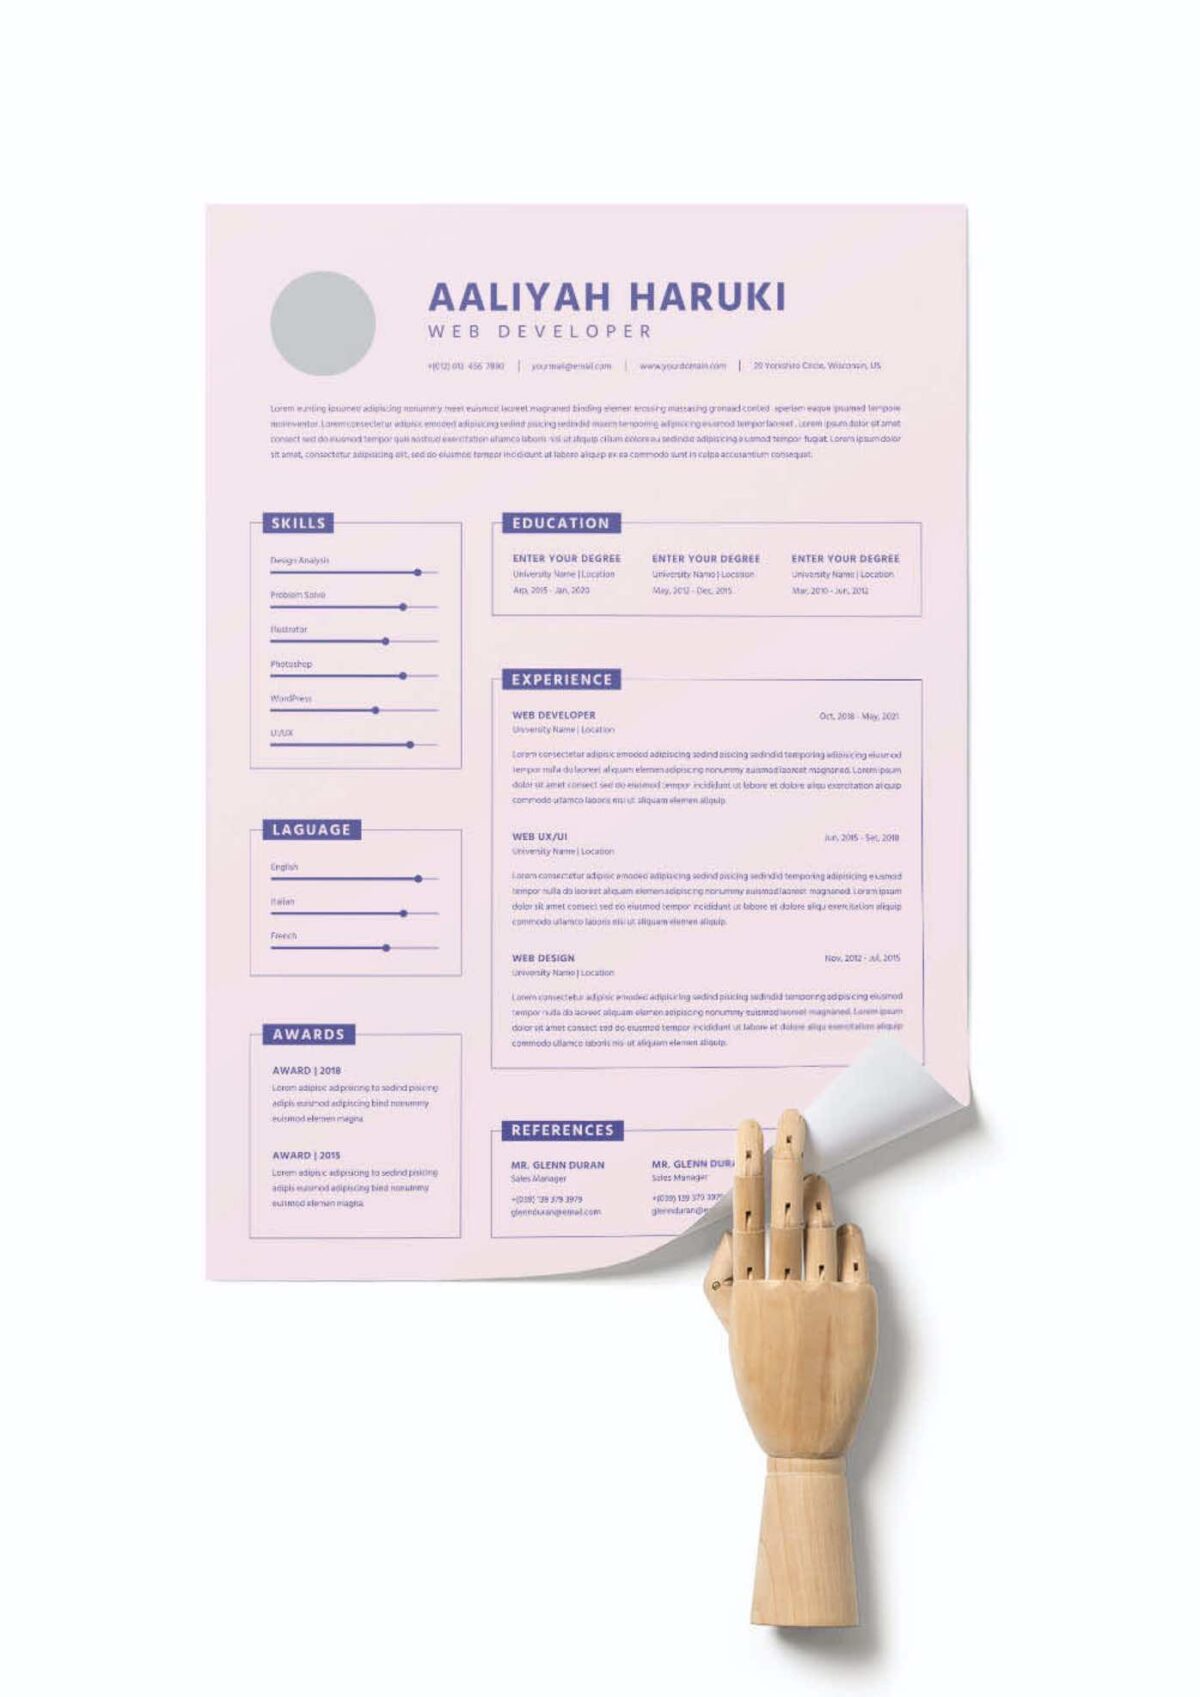 CV #2 Aaliyah Haruki